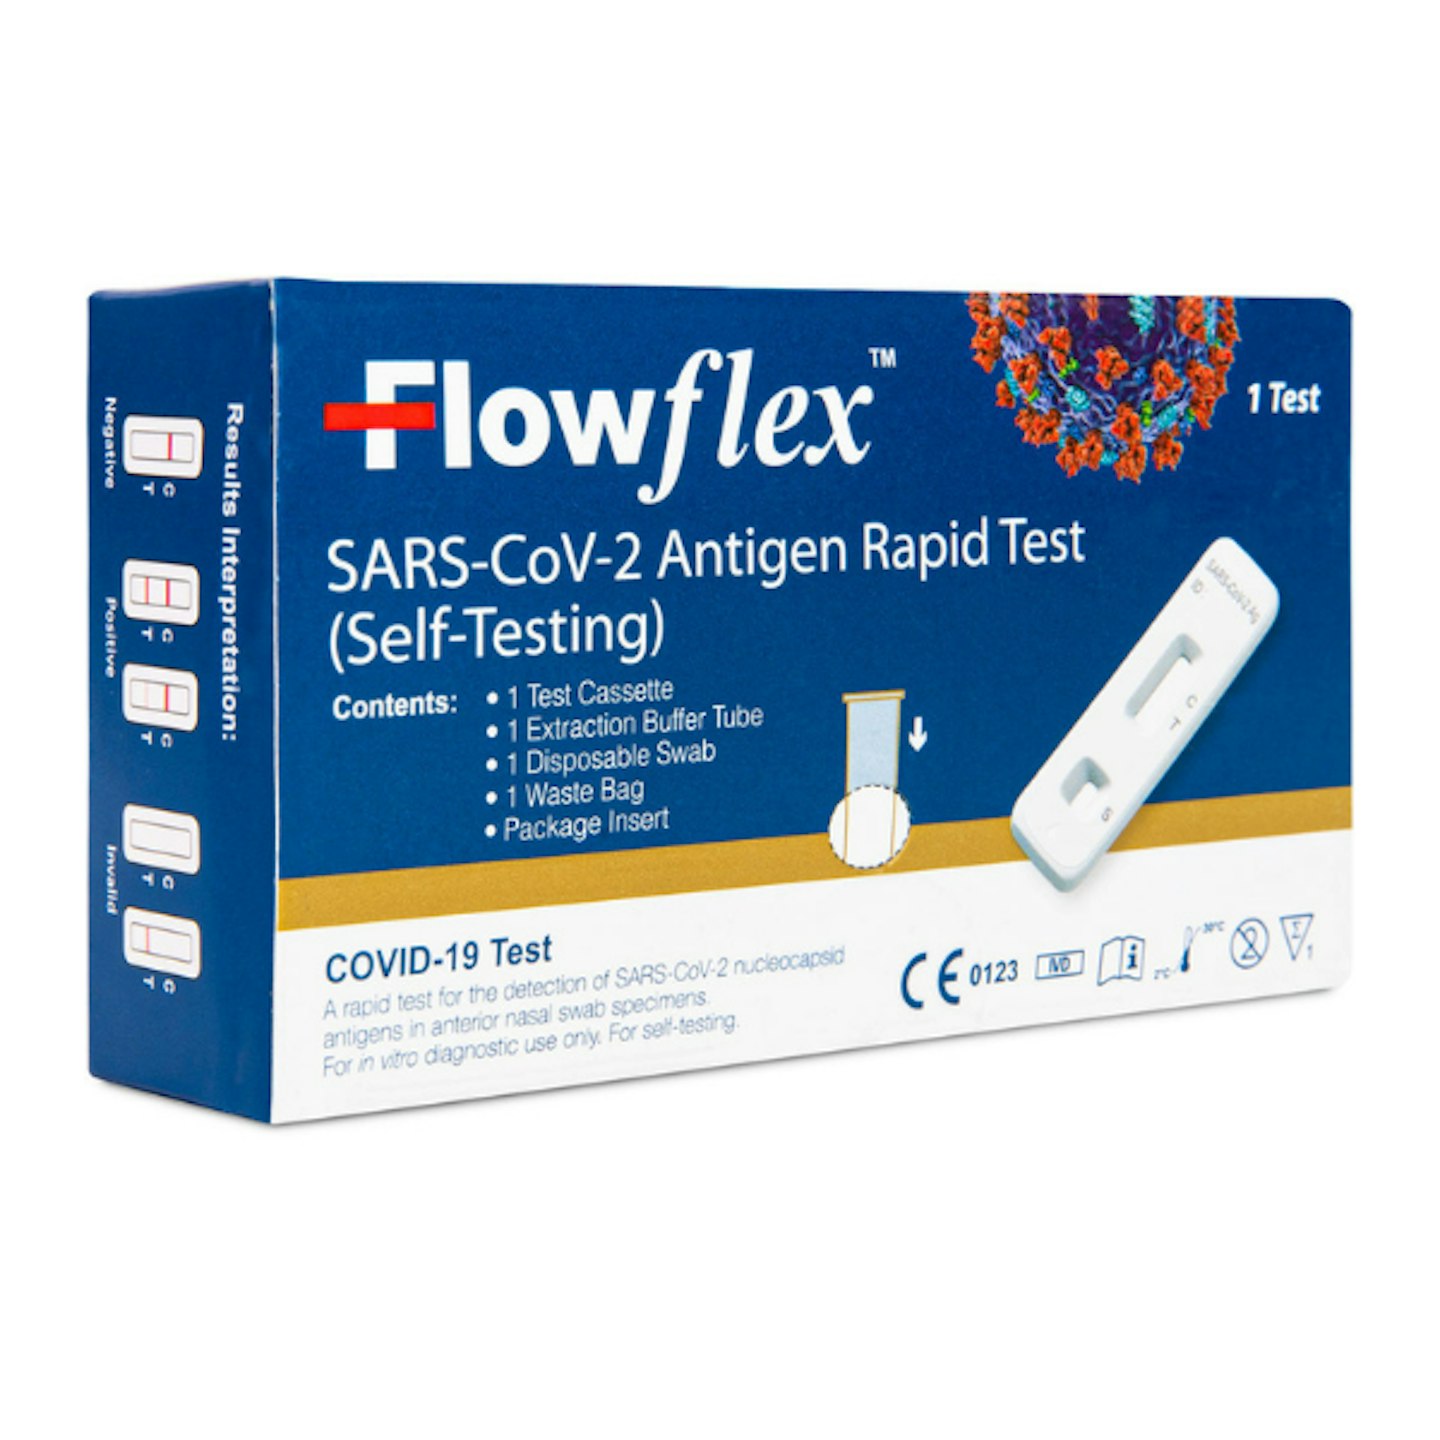 FlowFlex Antigen Rapid Test kit